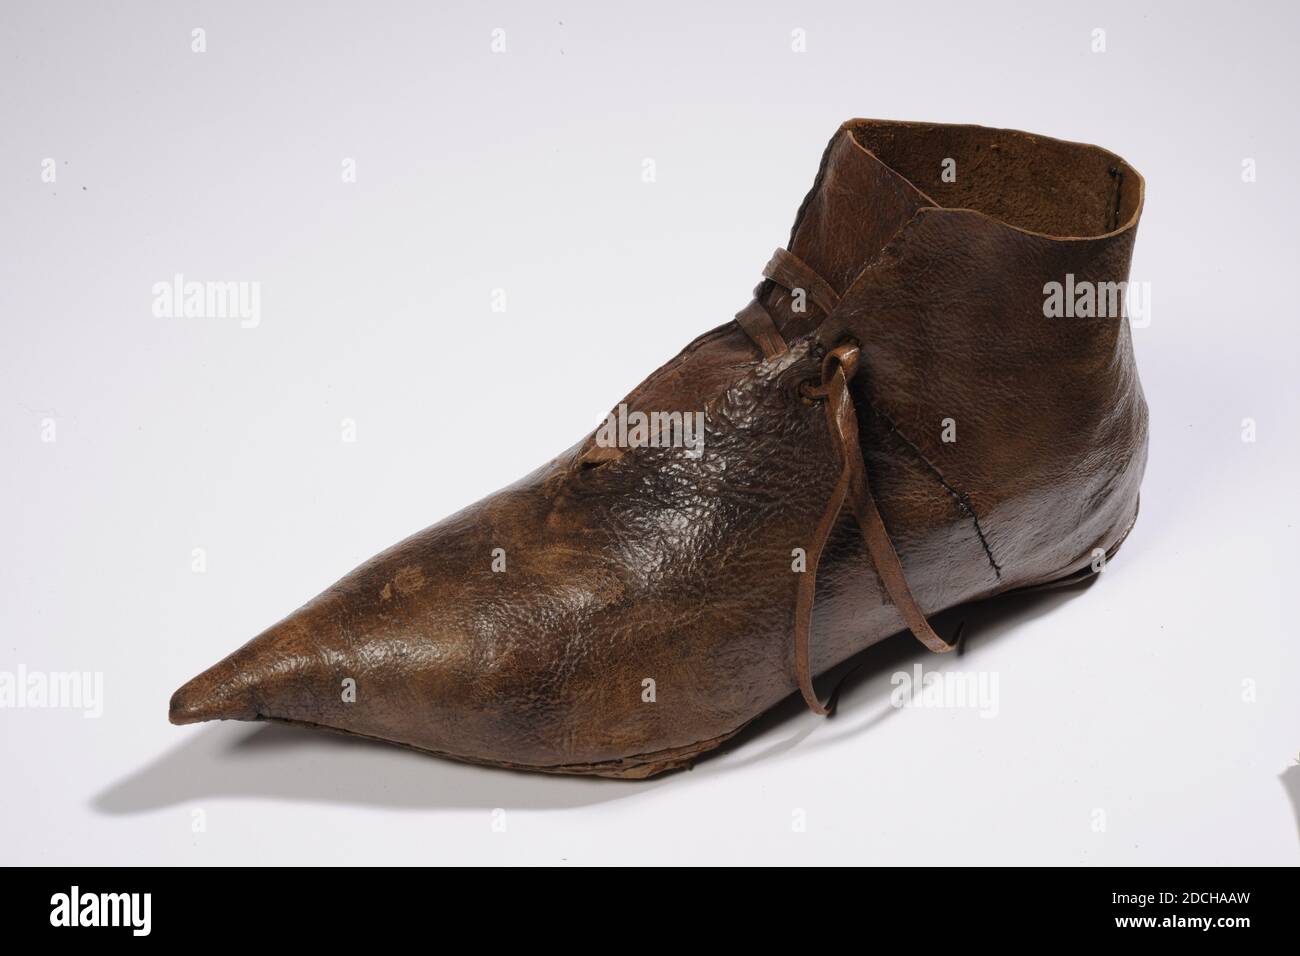 chaussure de toot, Anonyme, XIVe siècle, cousue, général: 11.8 x 7.8 x 25cm 118 x 78 x 250mm, chaussure de Toot en cuir, également appelée Beak Shoe, en raison de la pointe pointue. Il s'agit d'une chaussure montante qui s'élève au-dessus de la cheville. La chaussure est entièrement en cuir, y compris les lacets. Il y a un trou dans la semelle. Le patin est rembourré de foin et d'un tissu tricoté marron, 1995 Banque D'Images